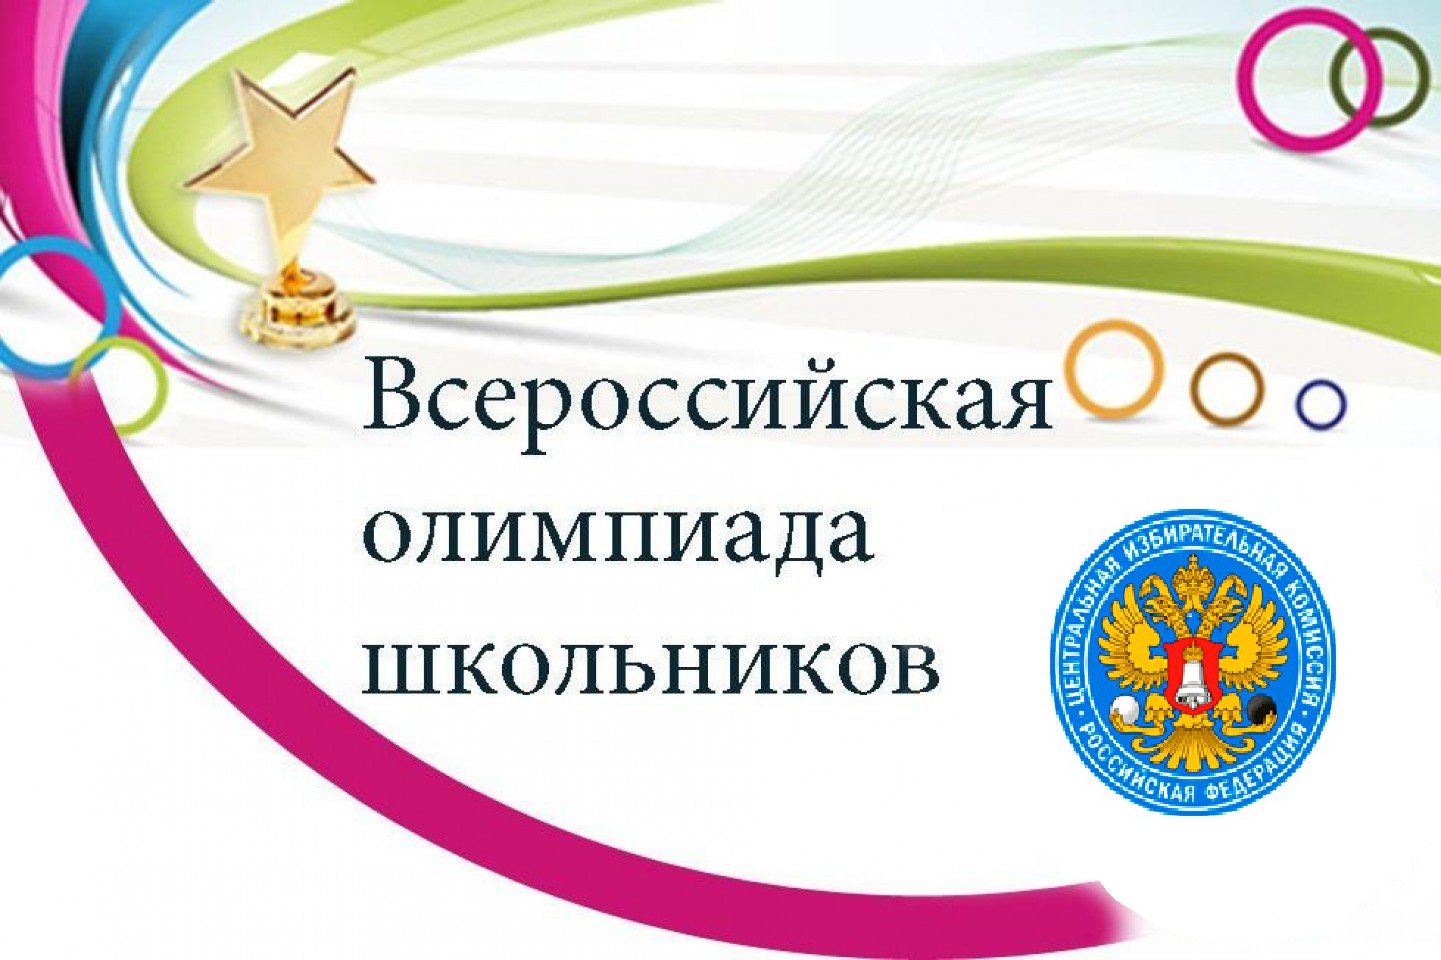 ЦИК утвердила положение о всероссийской олимпиаде школьников